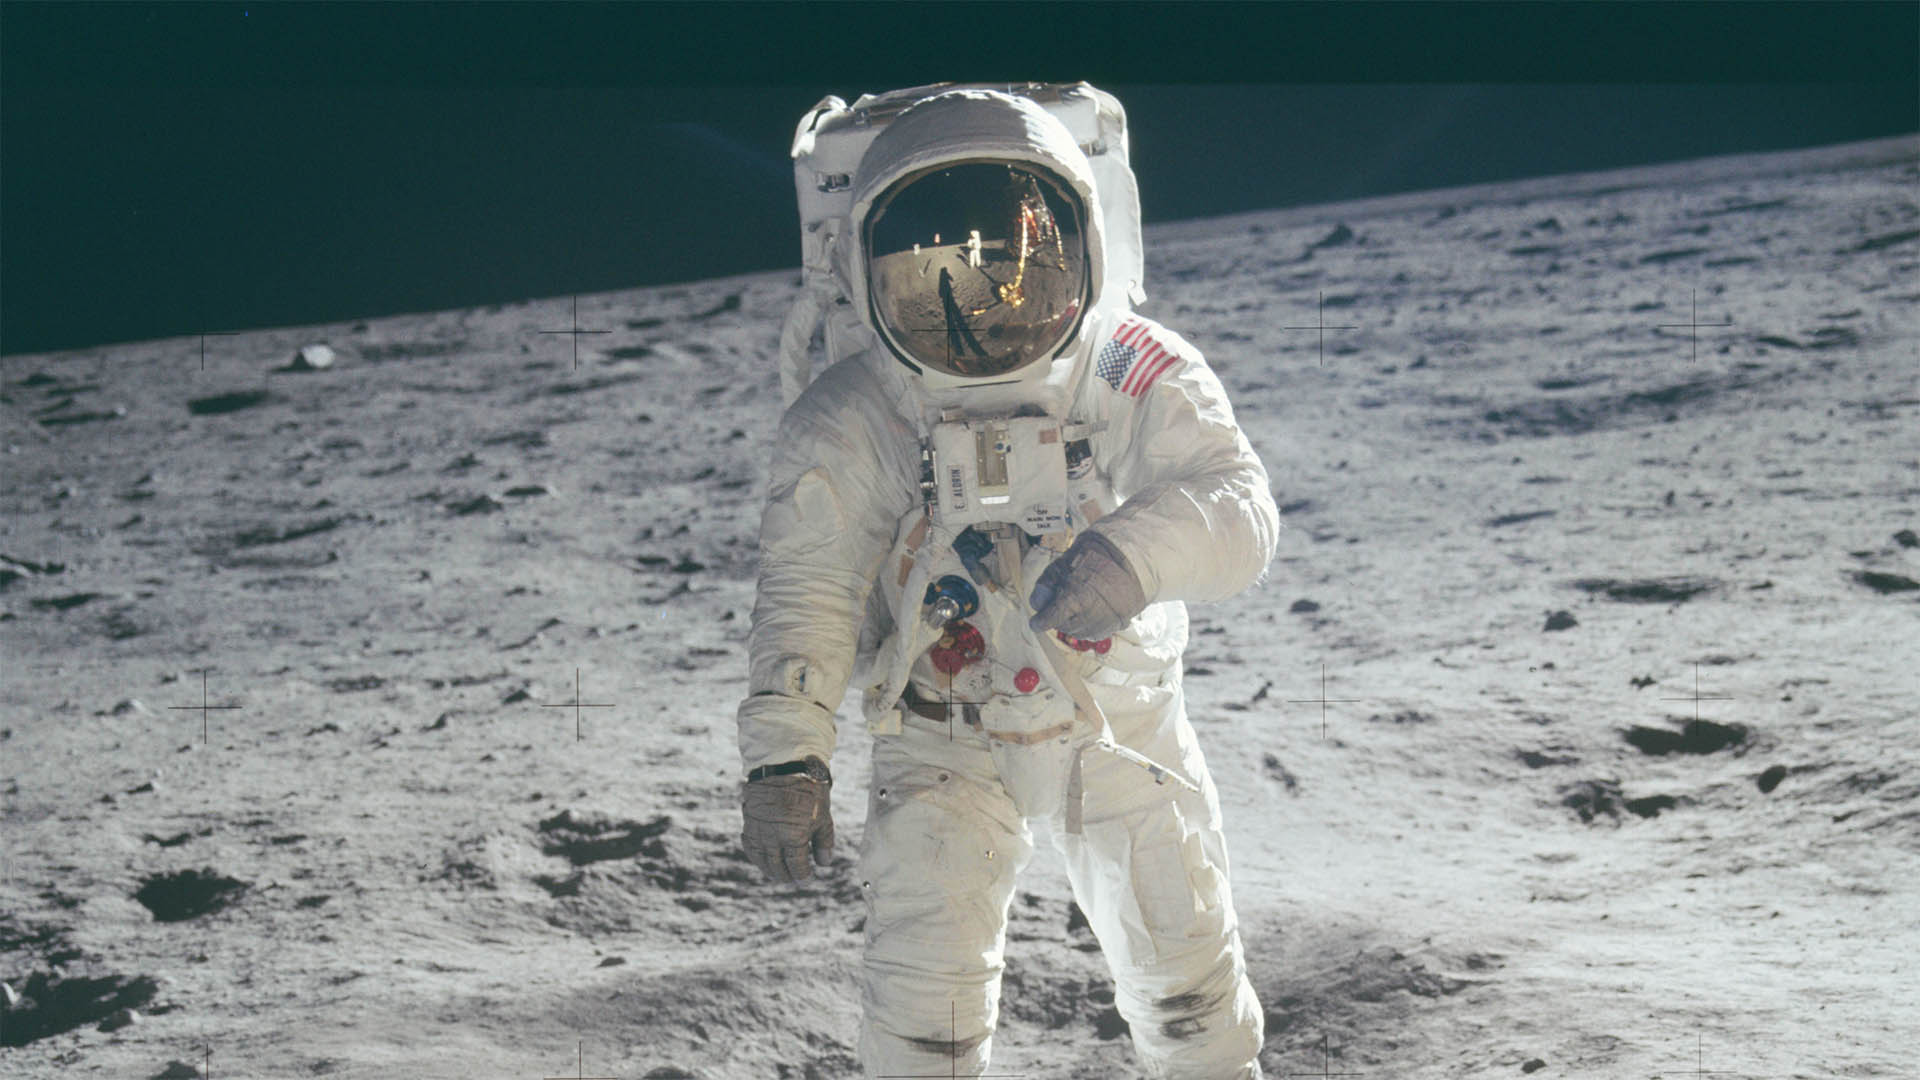 Am 21. Juli 1969 wurde ein kühner Traum wahr: Der erste Mensch auf dem Mond